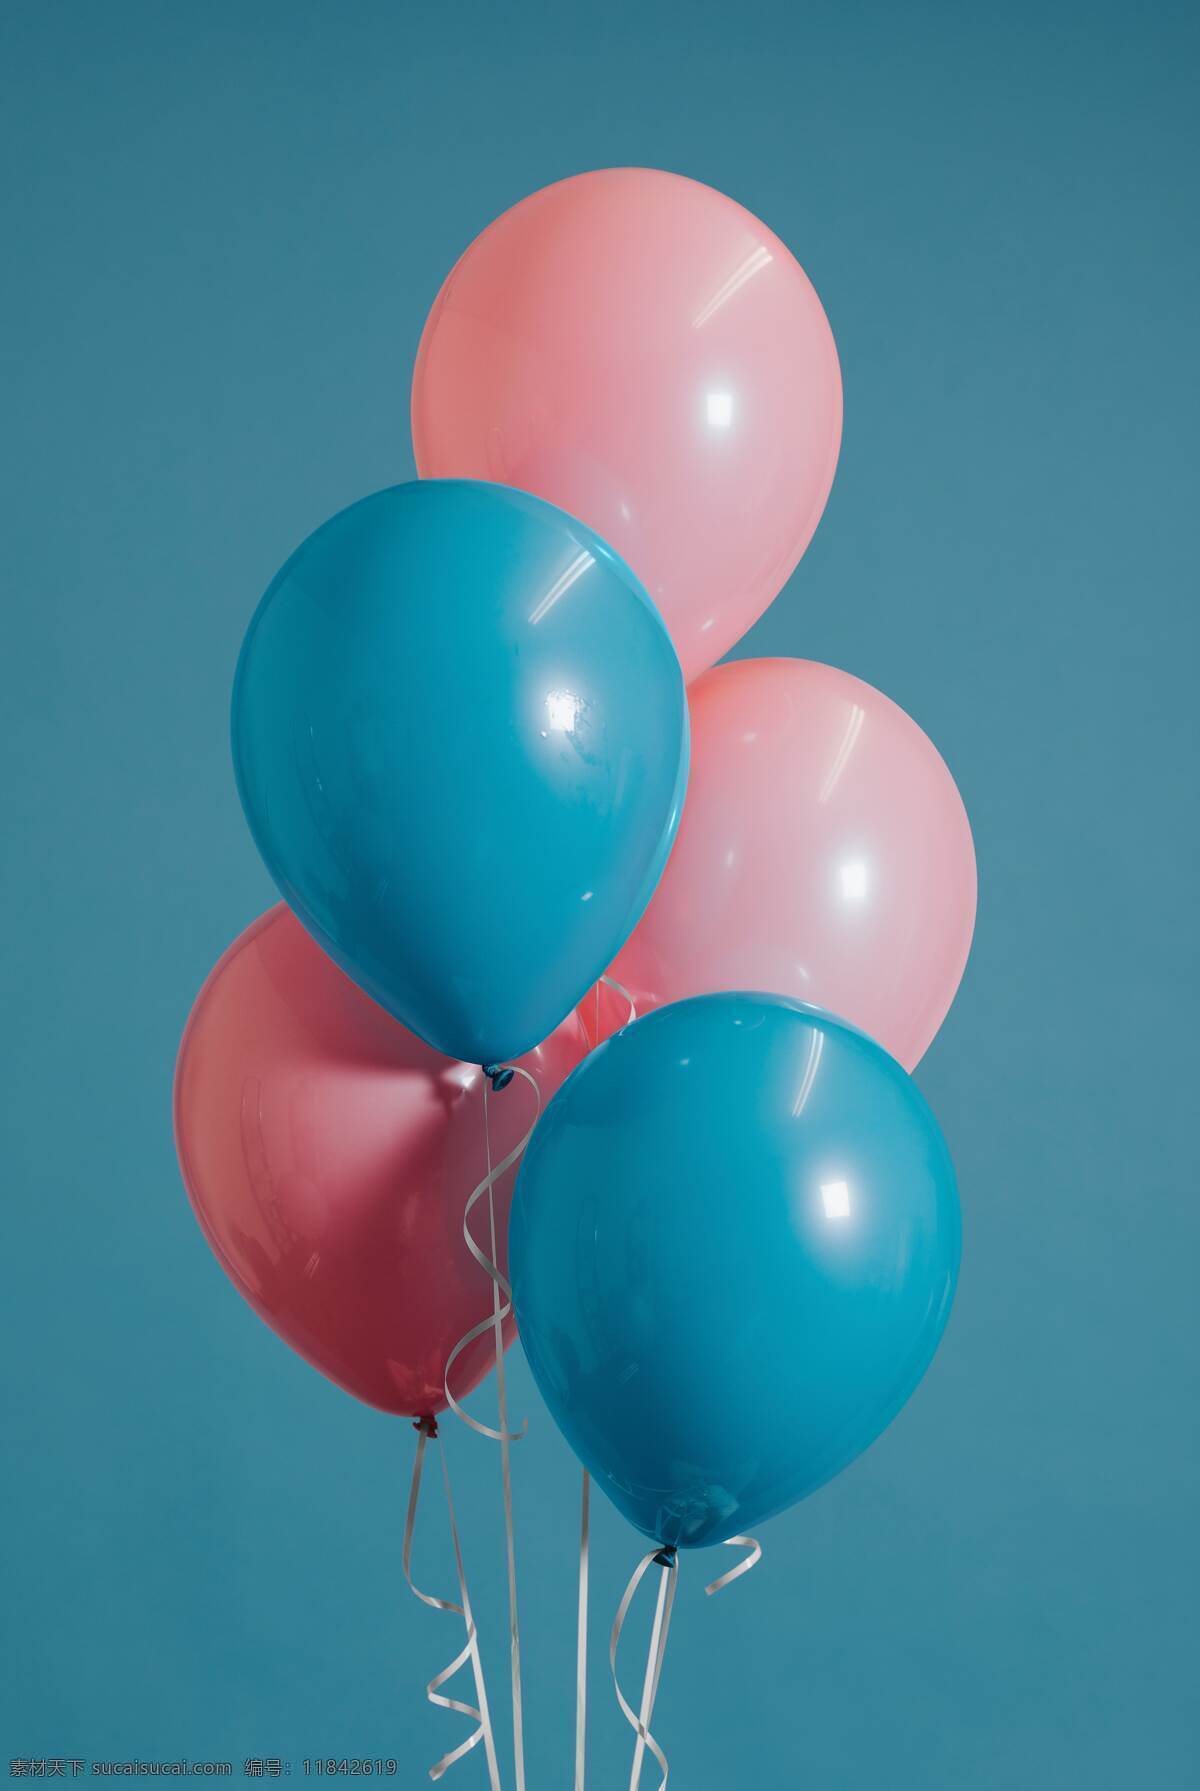 粉蓝气球 蓝色 背景 粉红色 气球 文艺 清新 生活百科 生活素材